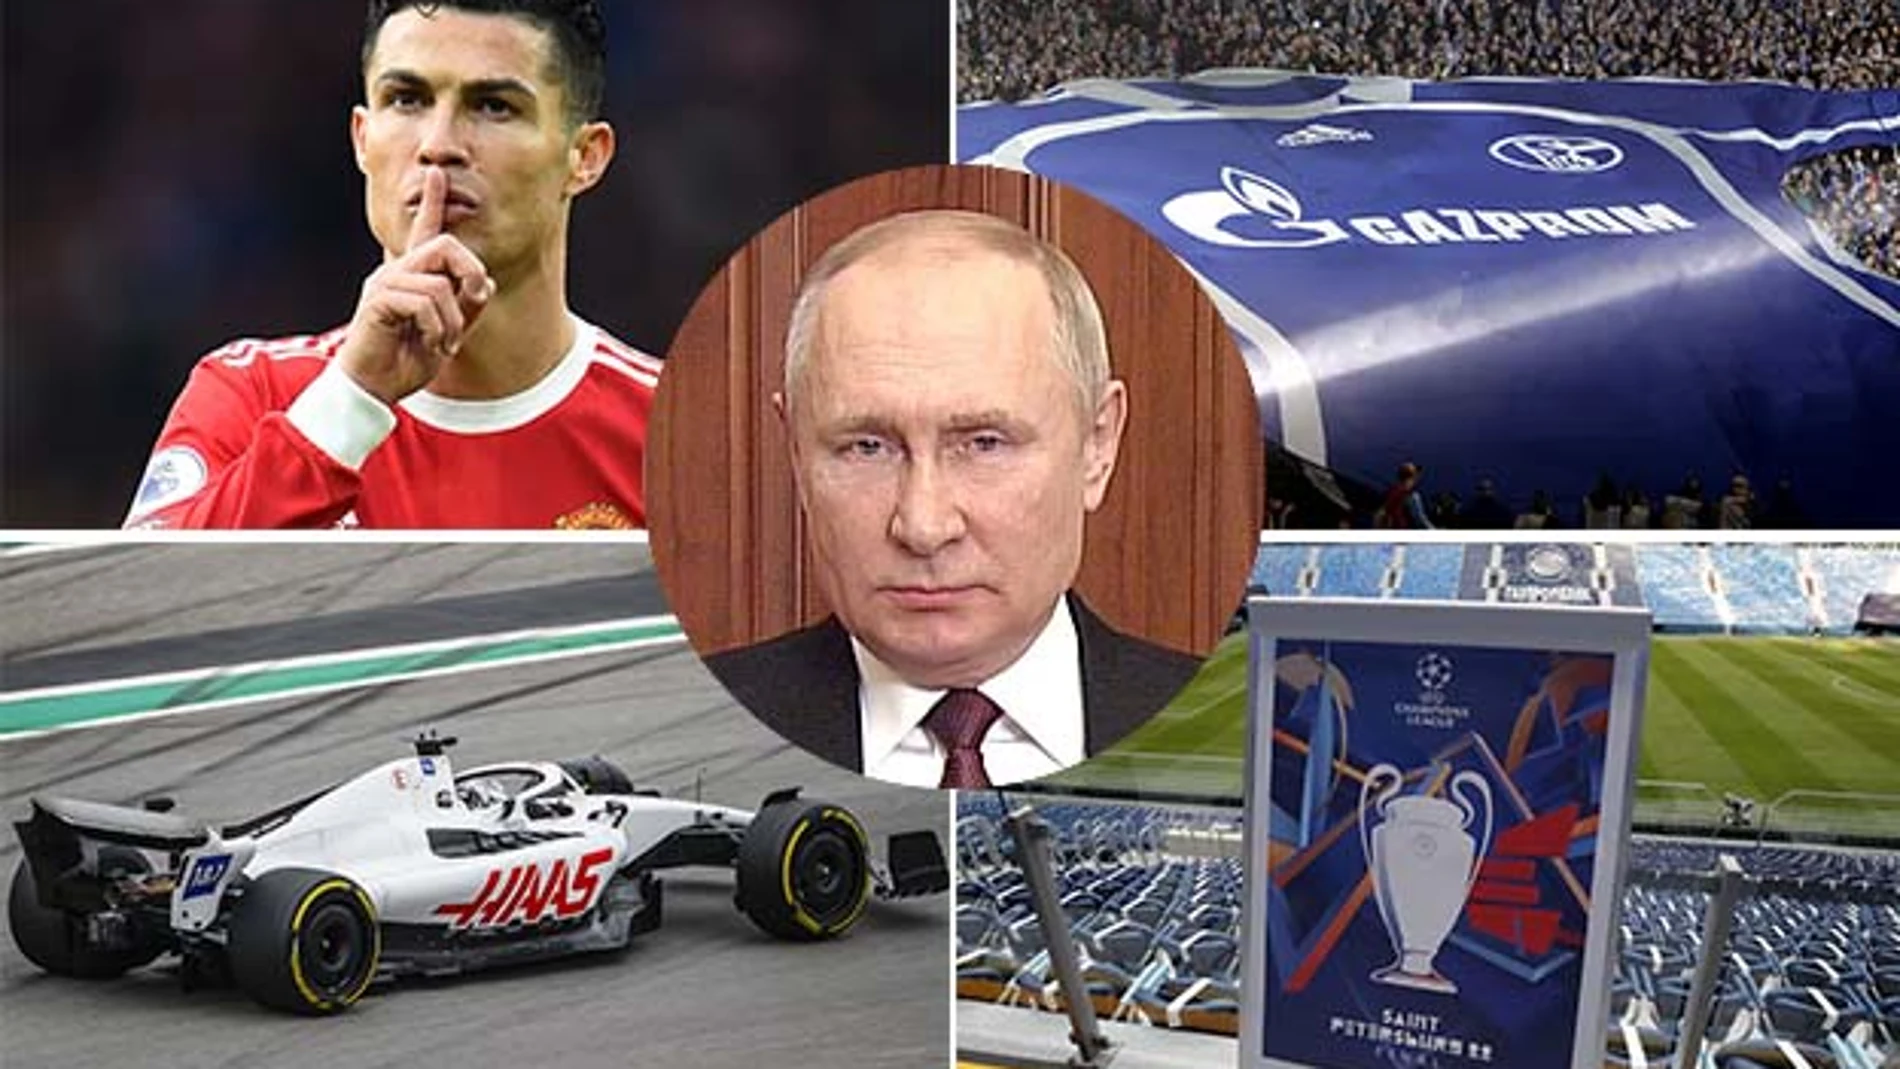 La UEFA, el Manchester United, el Schalke y Haas tienen vínculos económicos con la Rusia de Vladimir Putin.